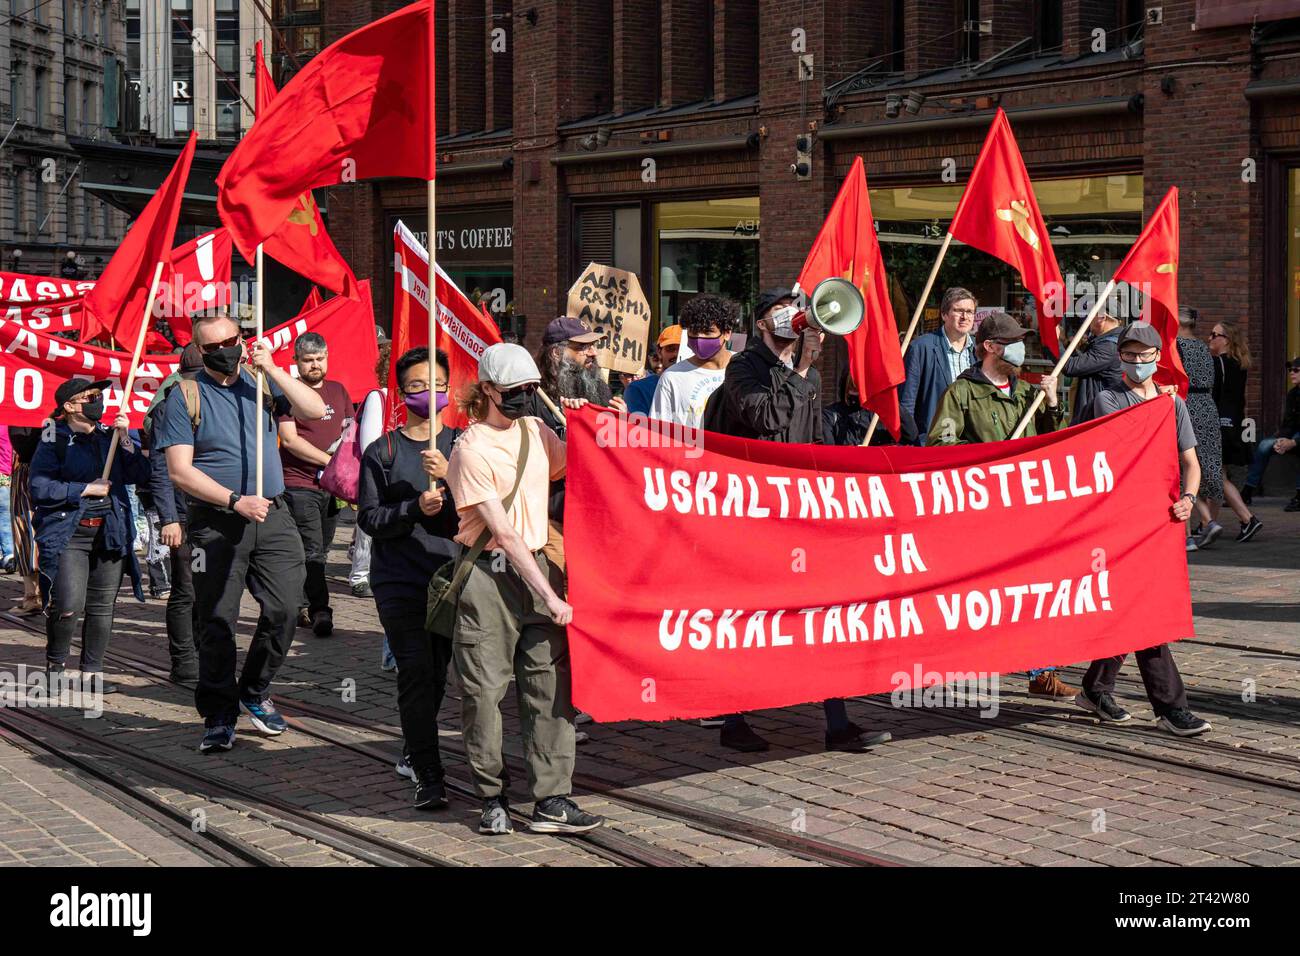 Maskierte Kommunisten mit roten Fahnen und Banner auf Aleksanterinkatu bei mir emme vaikene! Anti-Rassismus-Demonstration in Helsinki, Finnland Stockfoto